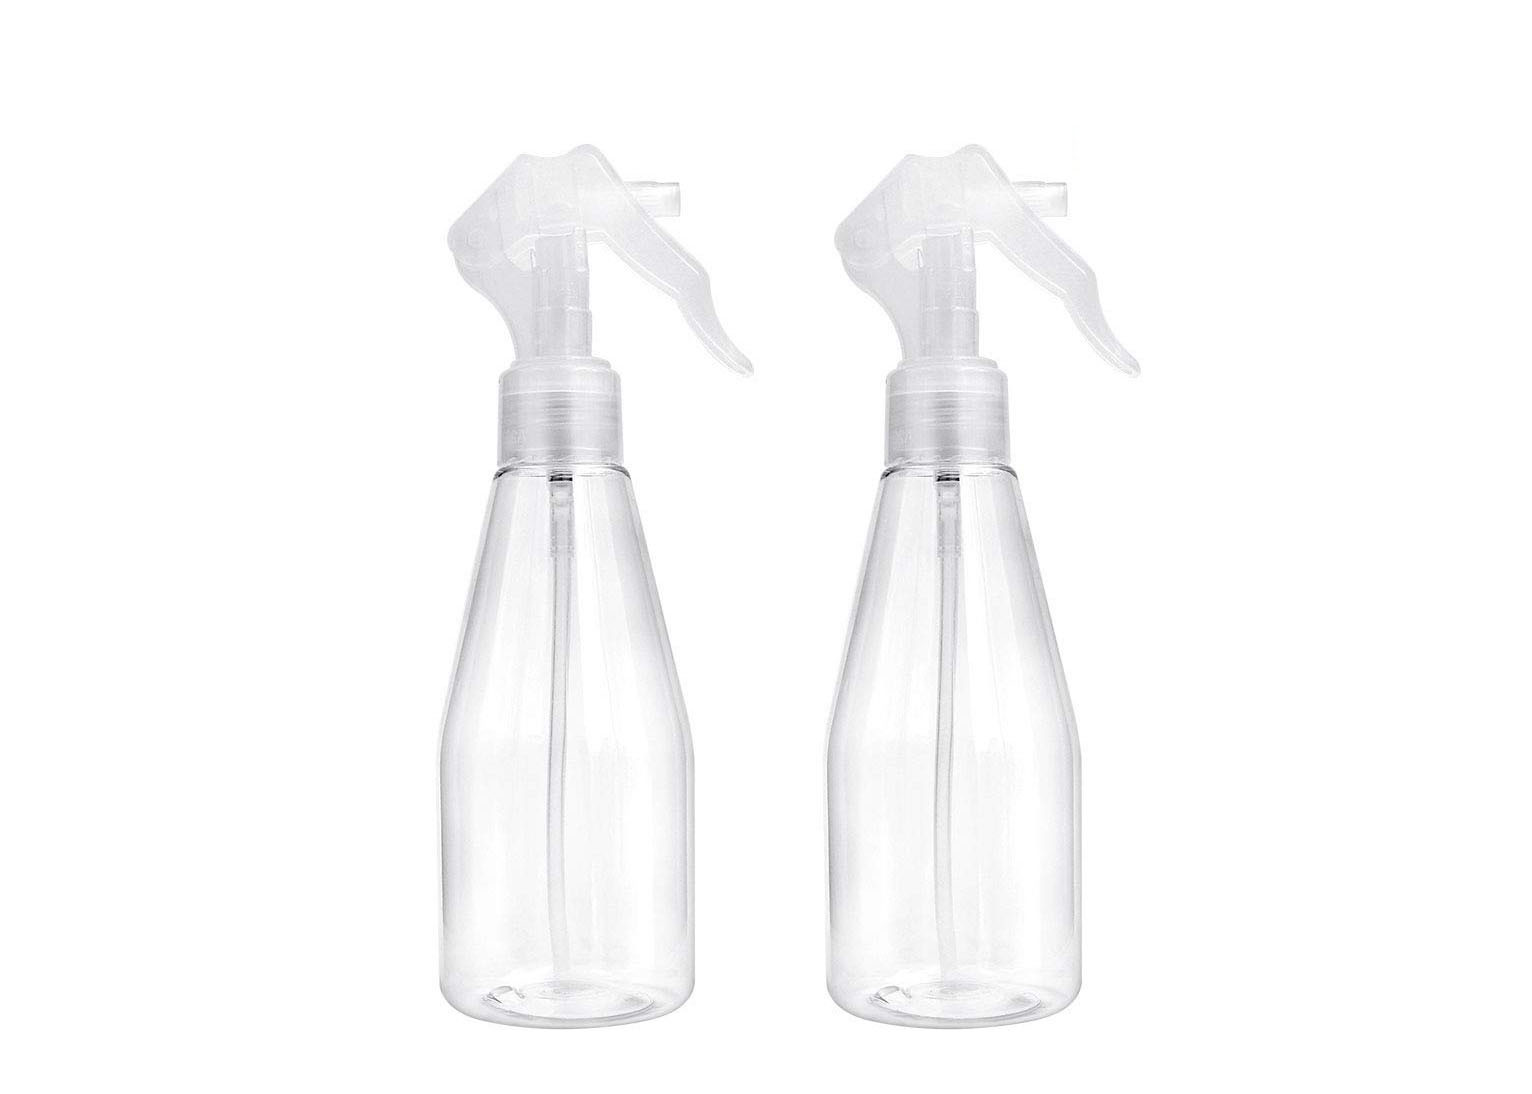 Botellas cosméticas del espray del mini disparador para la limpieza del cuidado personal/de la casa